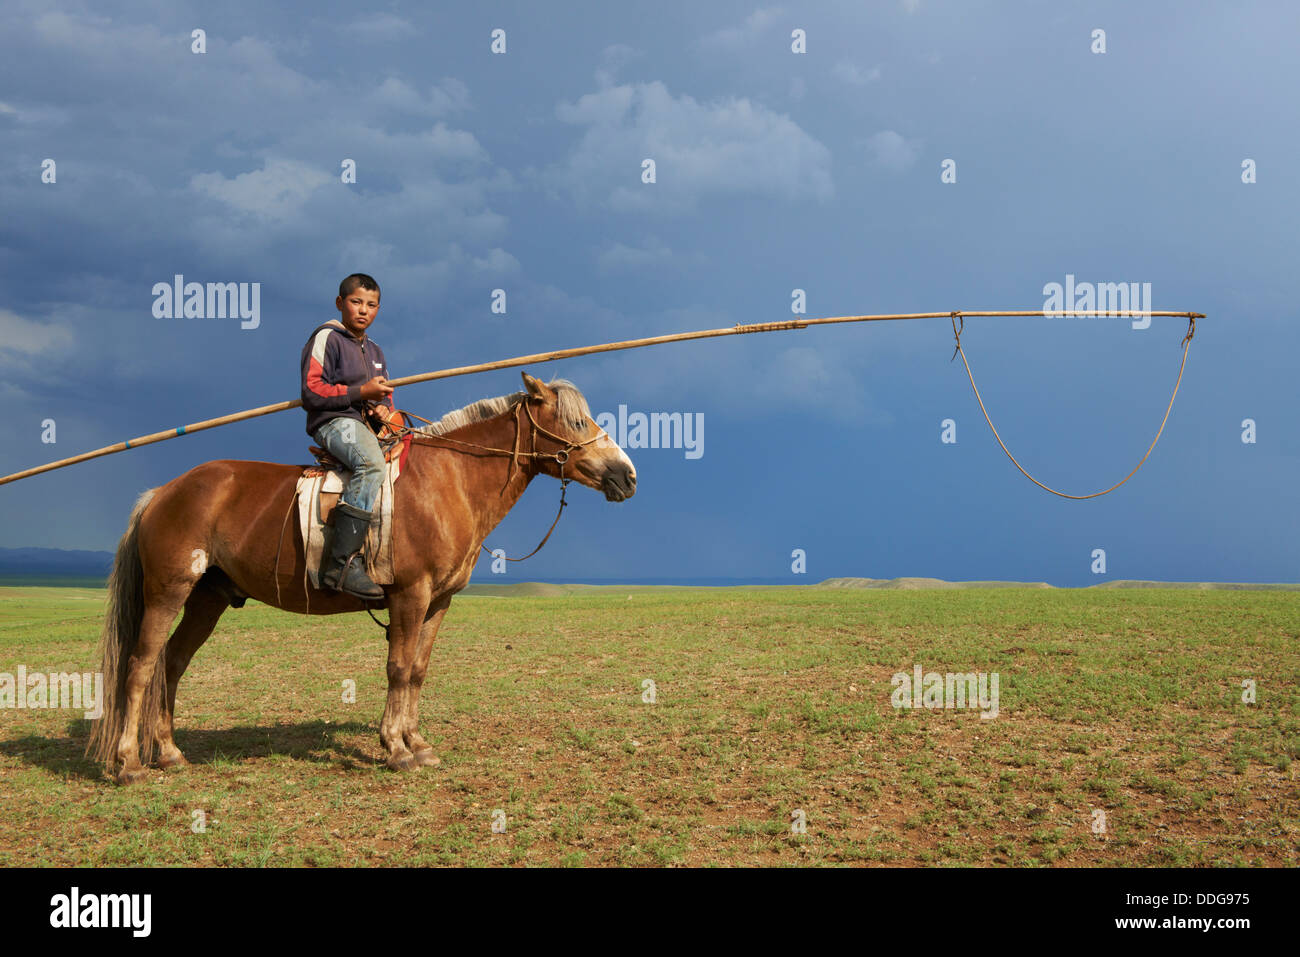 Mongolia, Tov province, nomad, horseman with urga Stock Photo